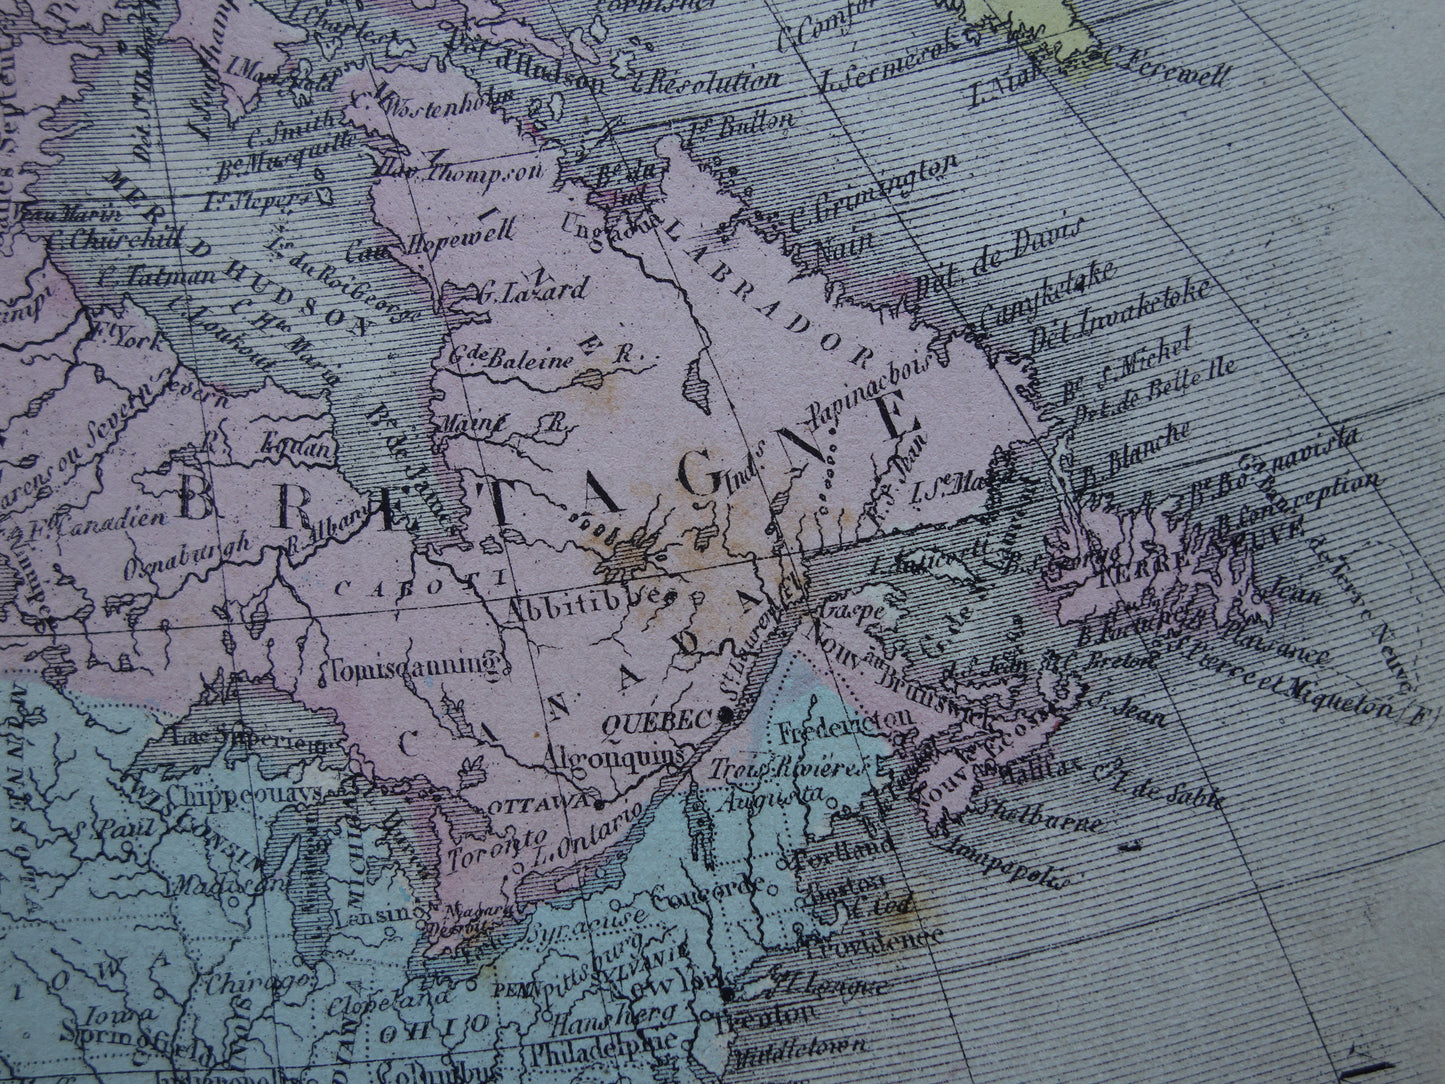 NOORD-AMERIKA Oude kaart van Verenigde Staten Canada Mexico Originele antieke handgekleurde landkaart continent